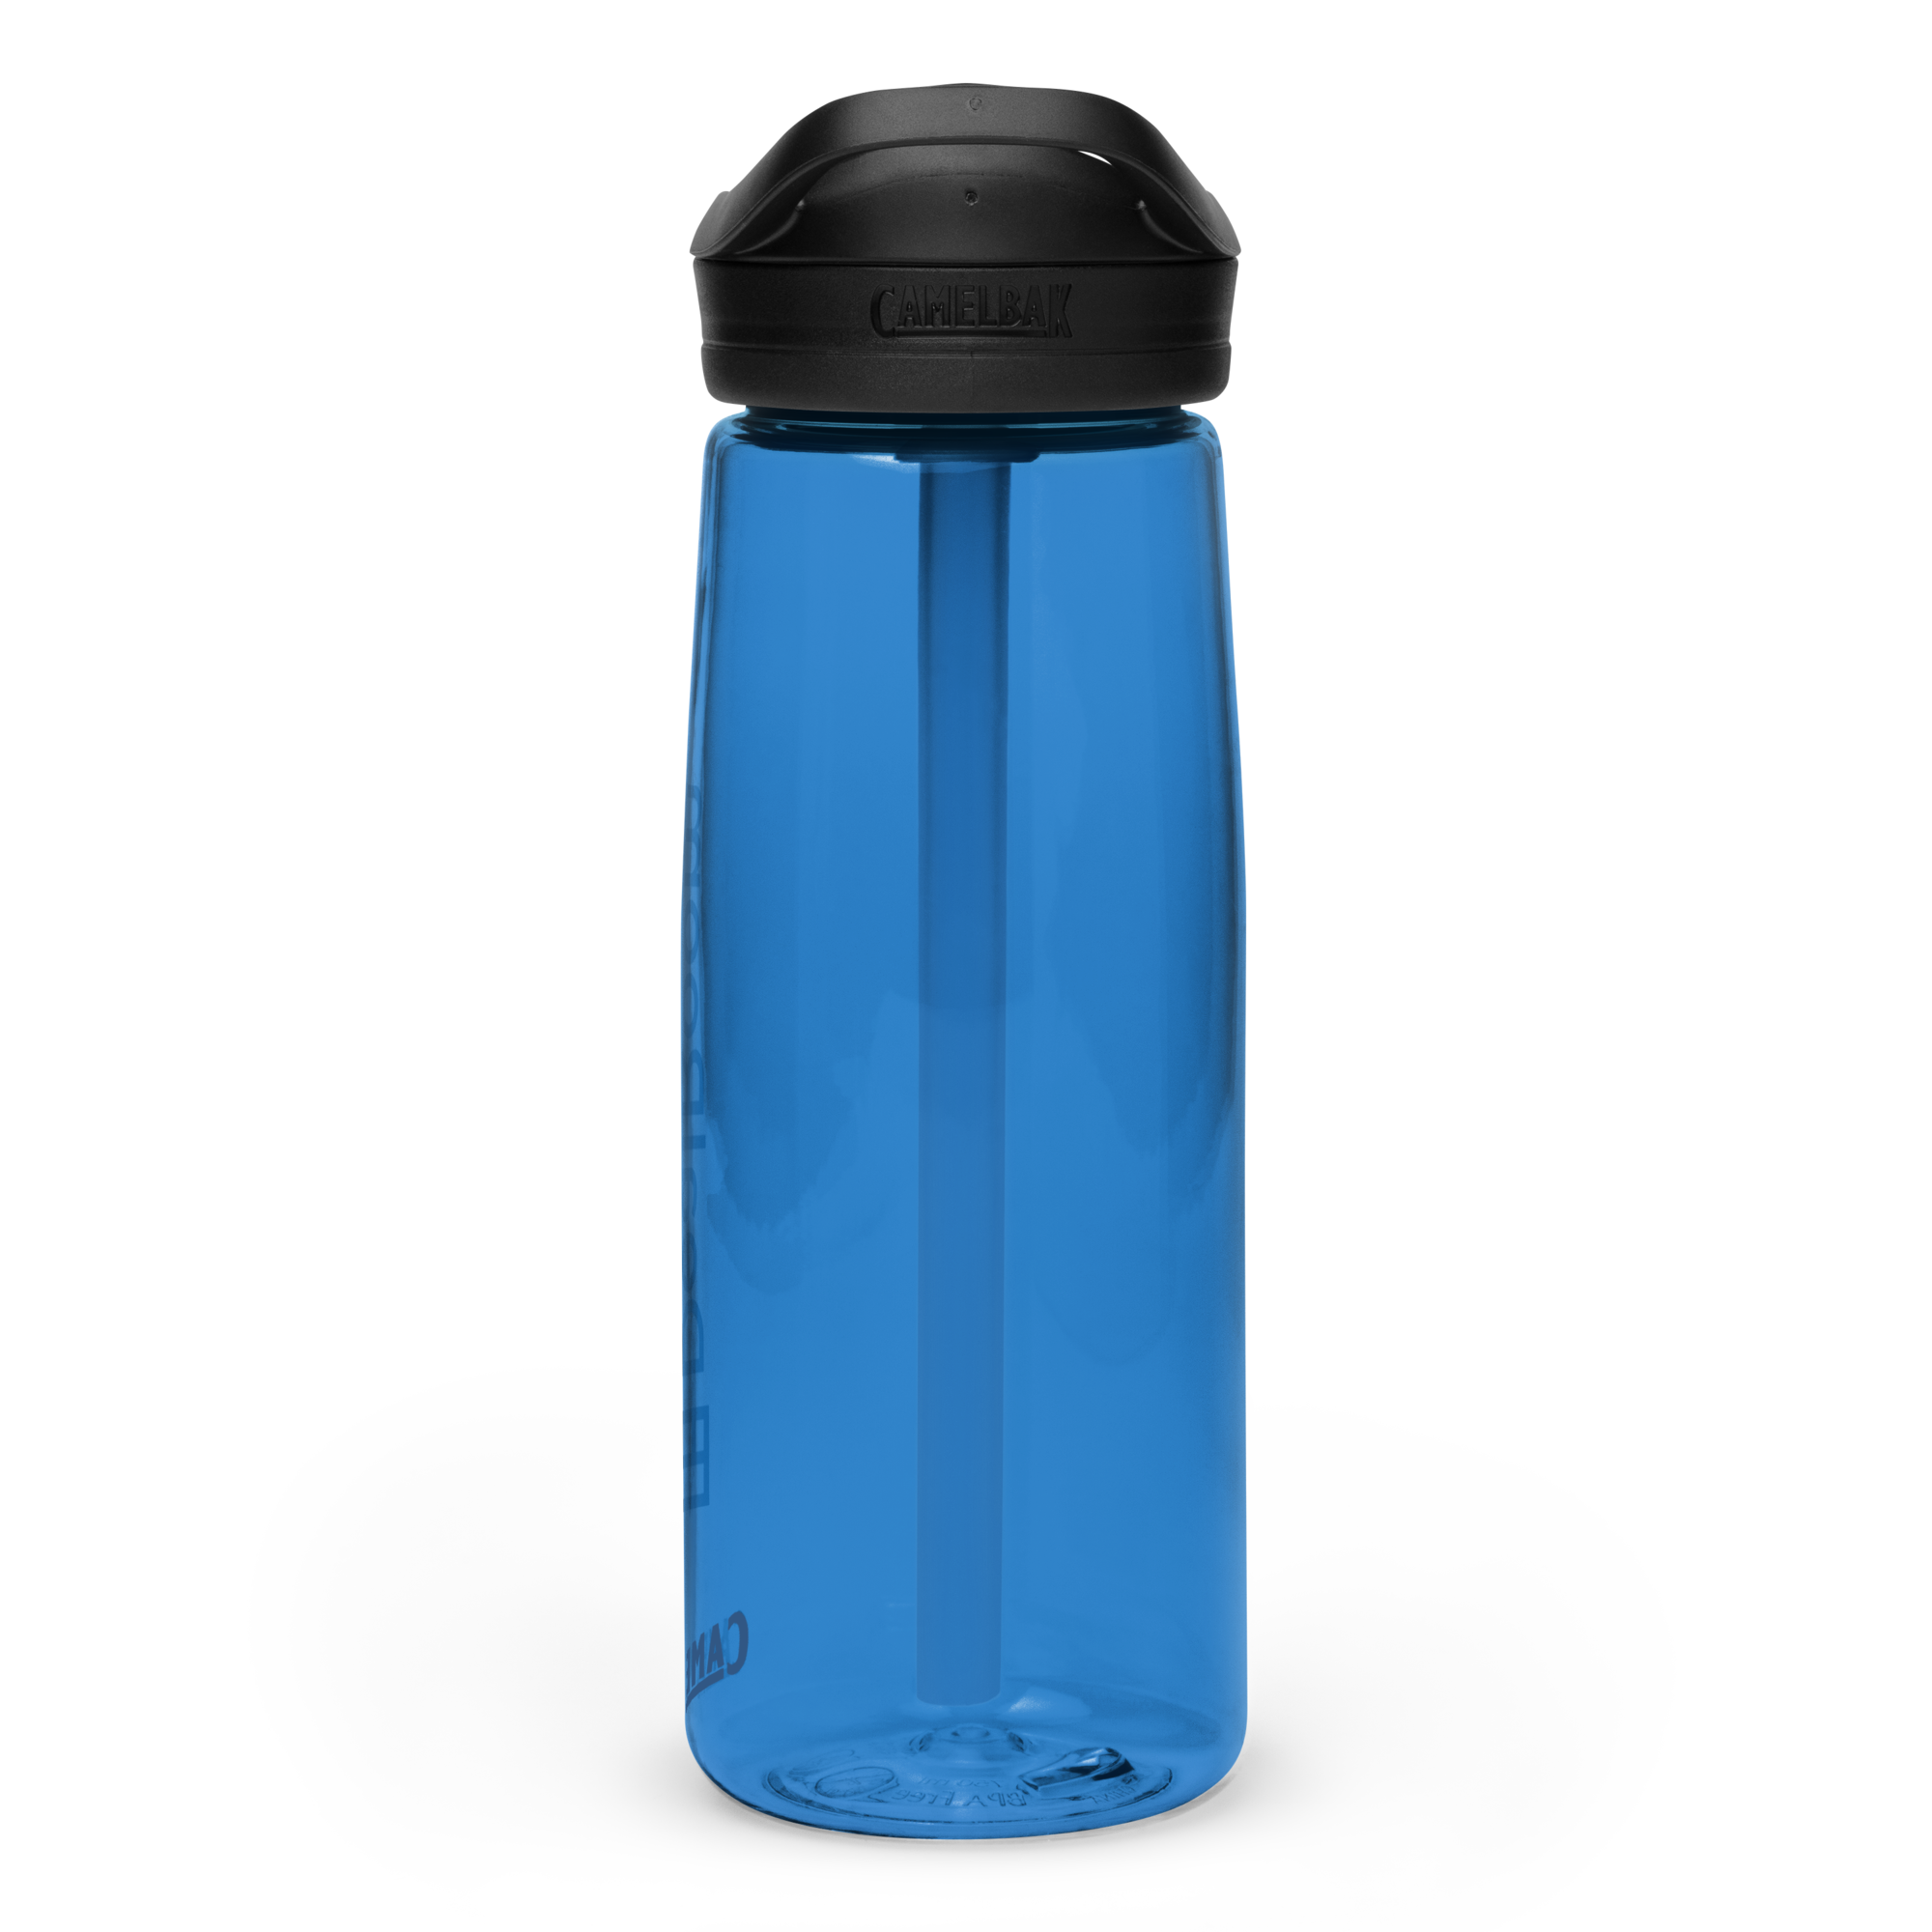 DealRoom Sports Water Bottle